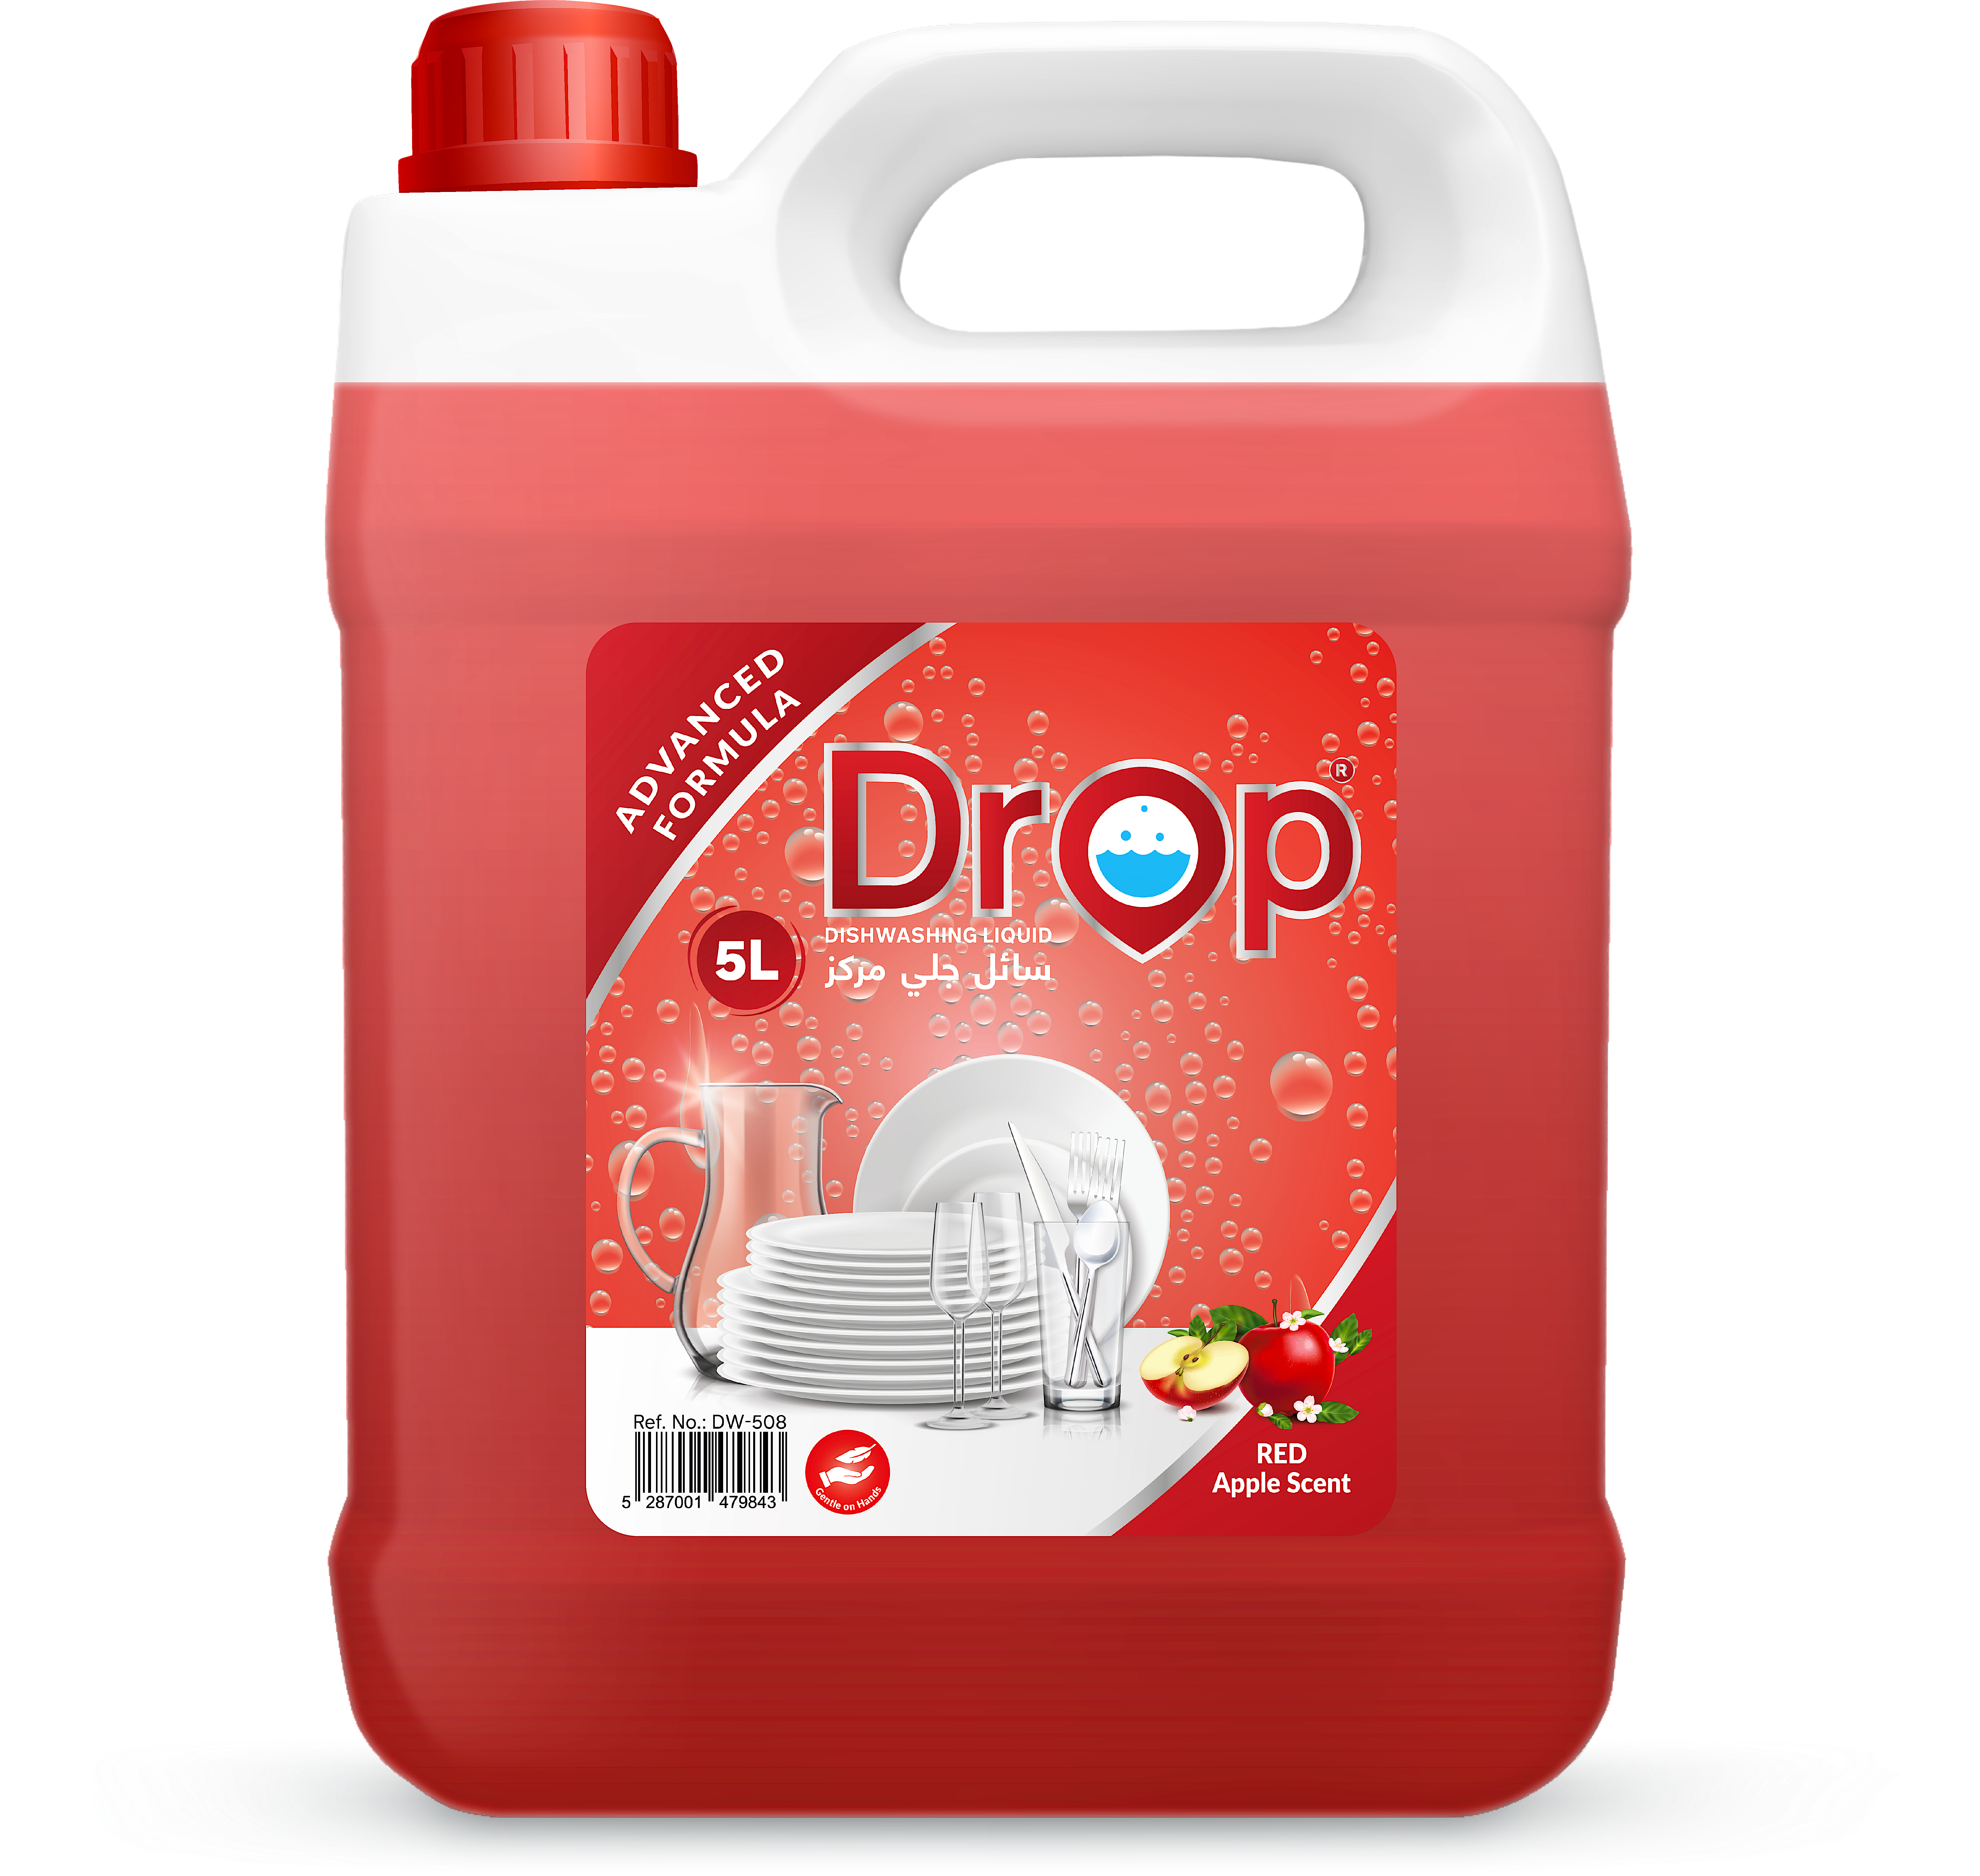 Drop Dishwashing Liquid Red Apple Scent 5 L